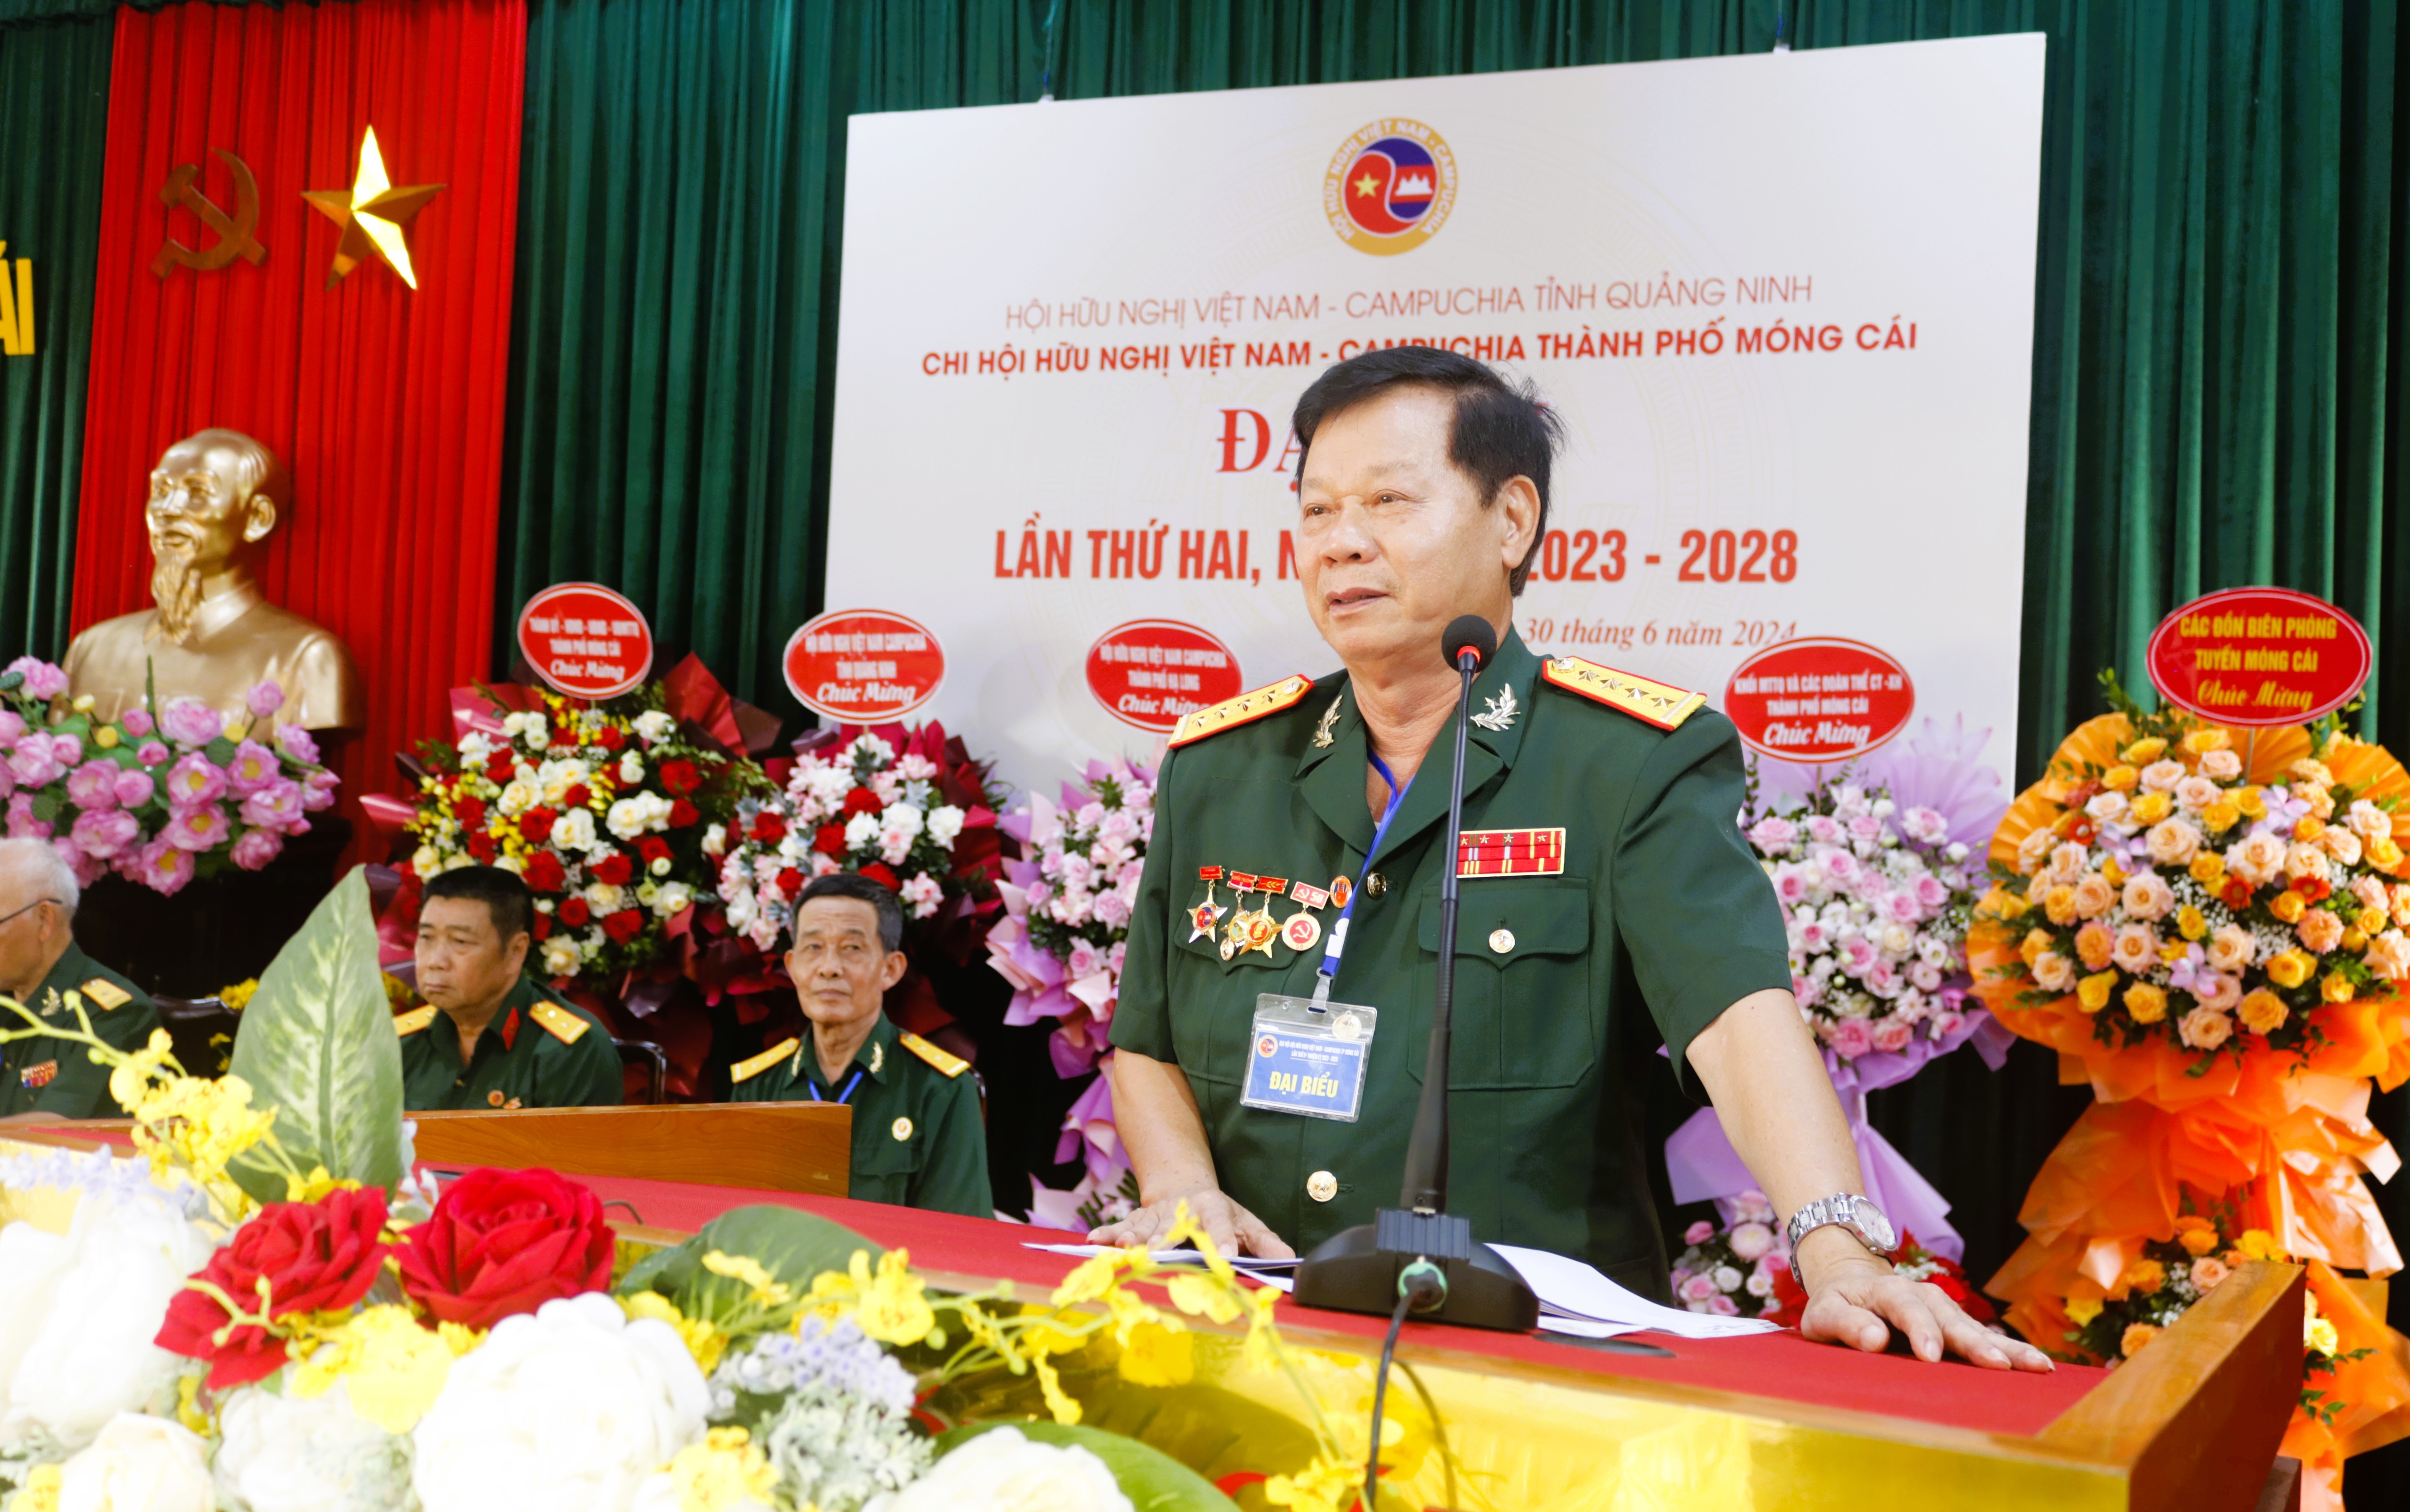 ỗ Quốc Viên, Chủ tịch Hội hữu nghị Việt Nam - Campuchia tỉnh Quảng Ninh phát biểu 